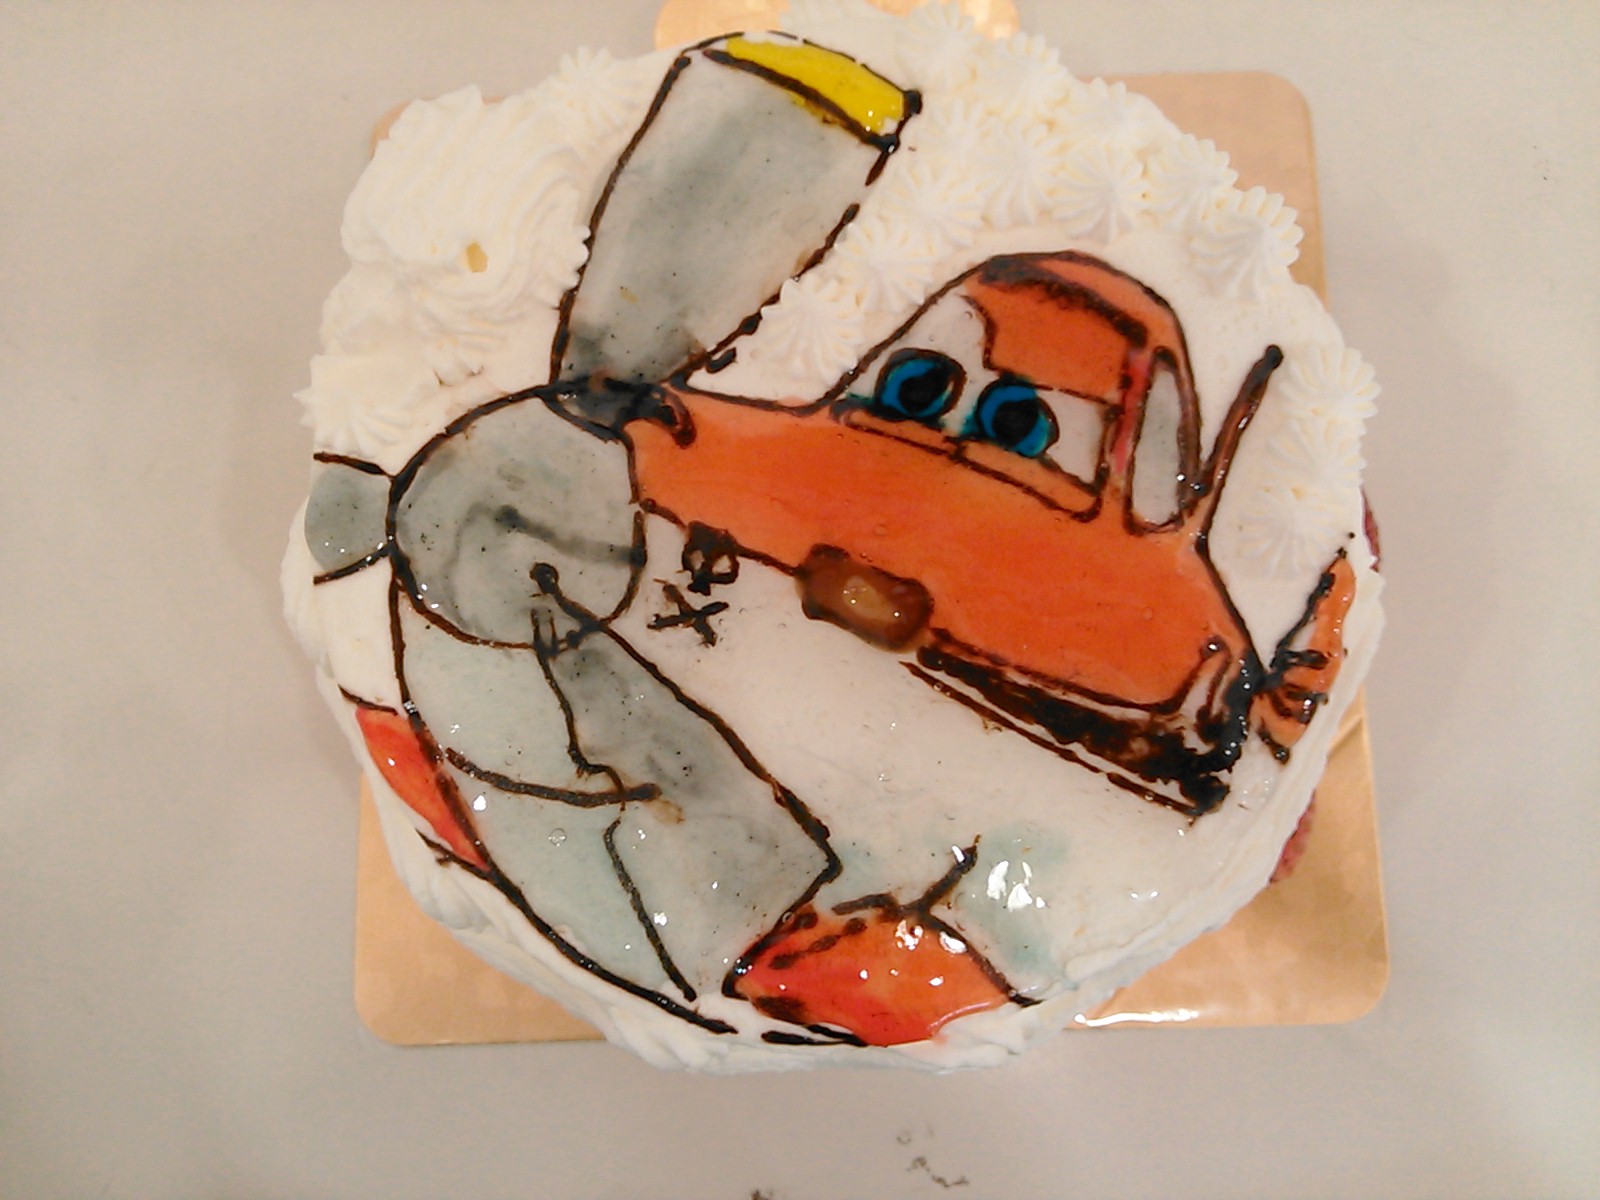 名古屋茶屋坂のケーキ スイーツ ダスティ クロップホッパーの絵デコレーションケーキ